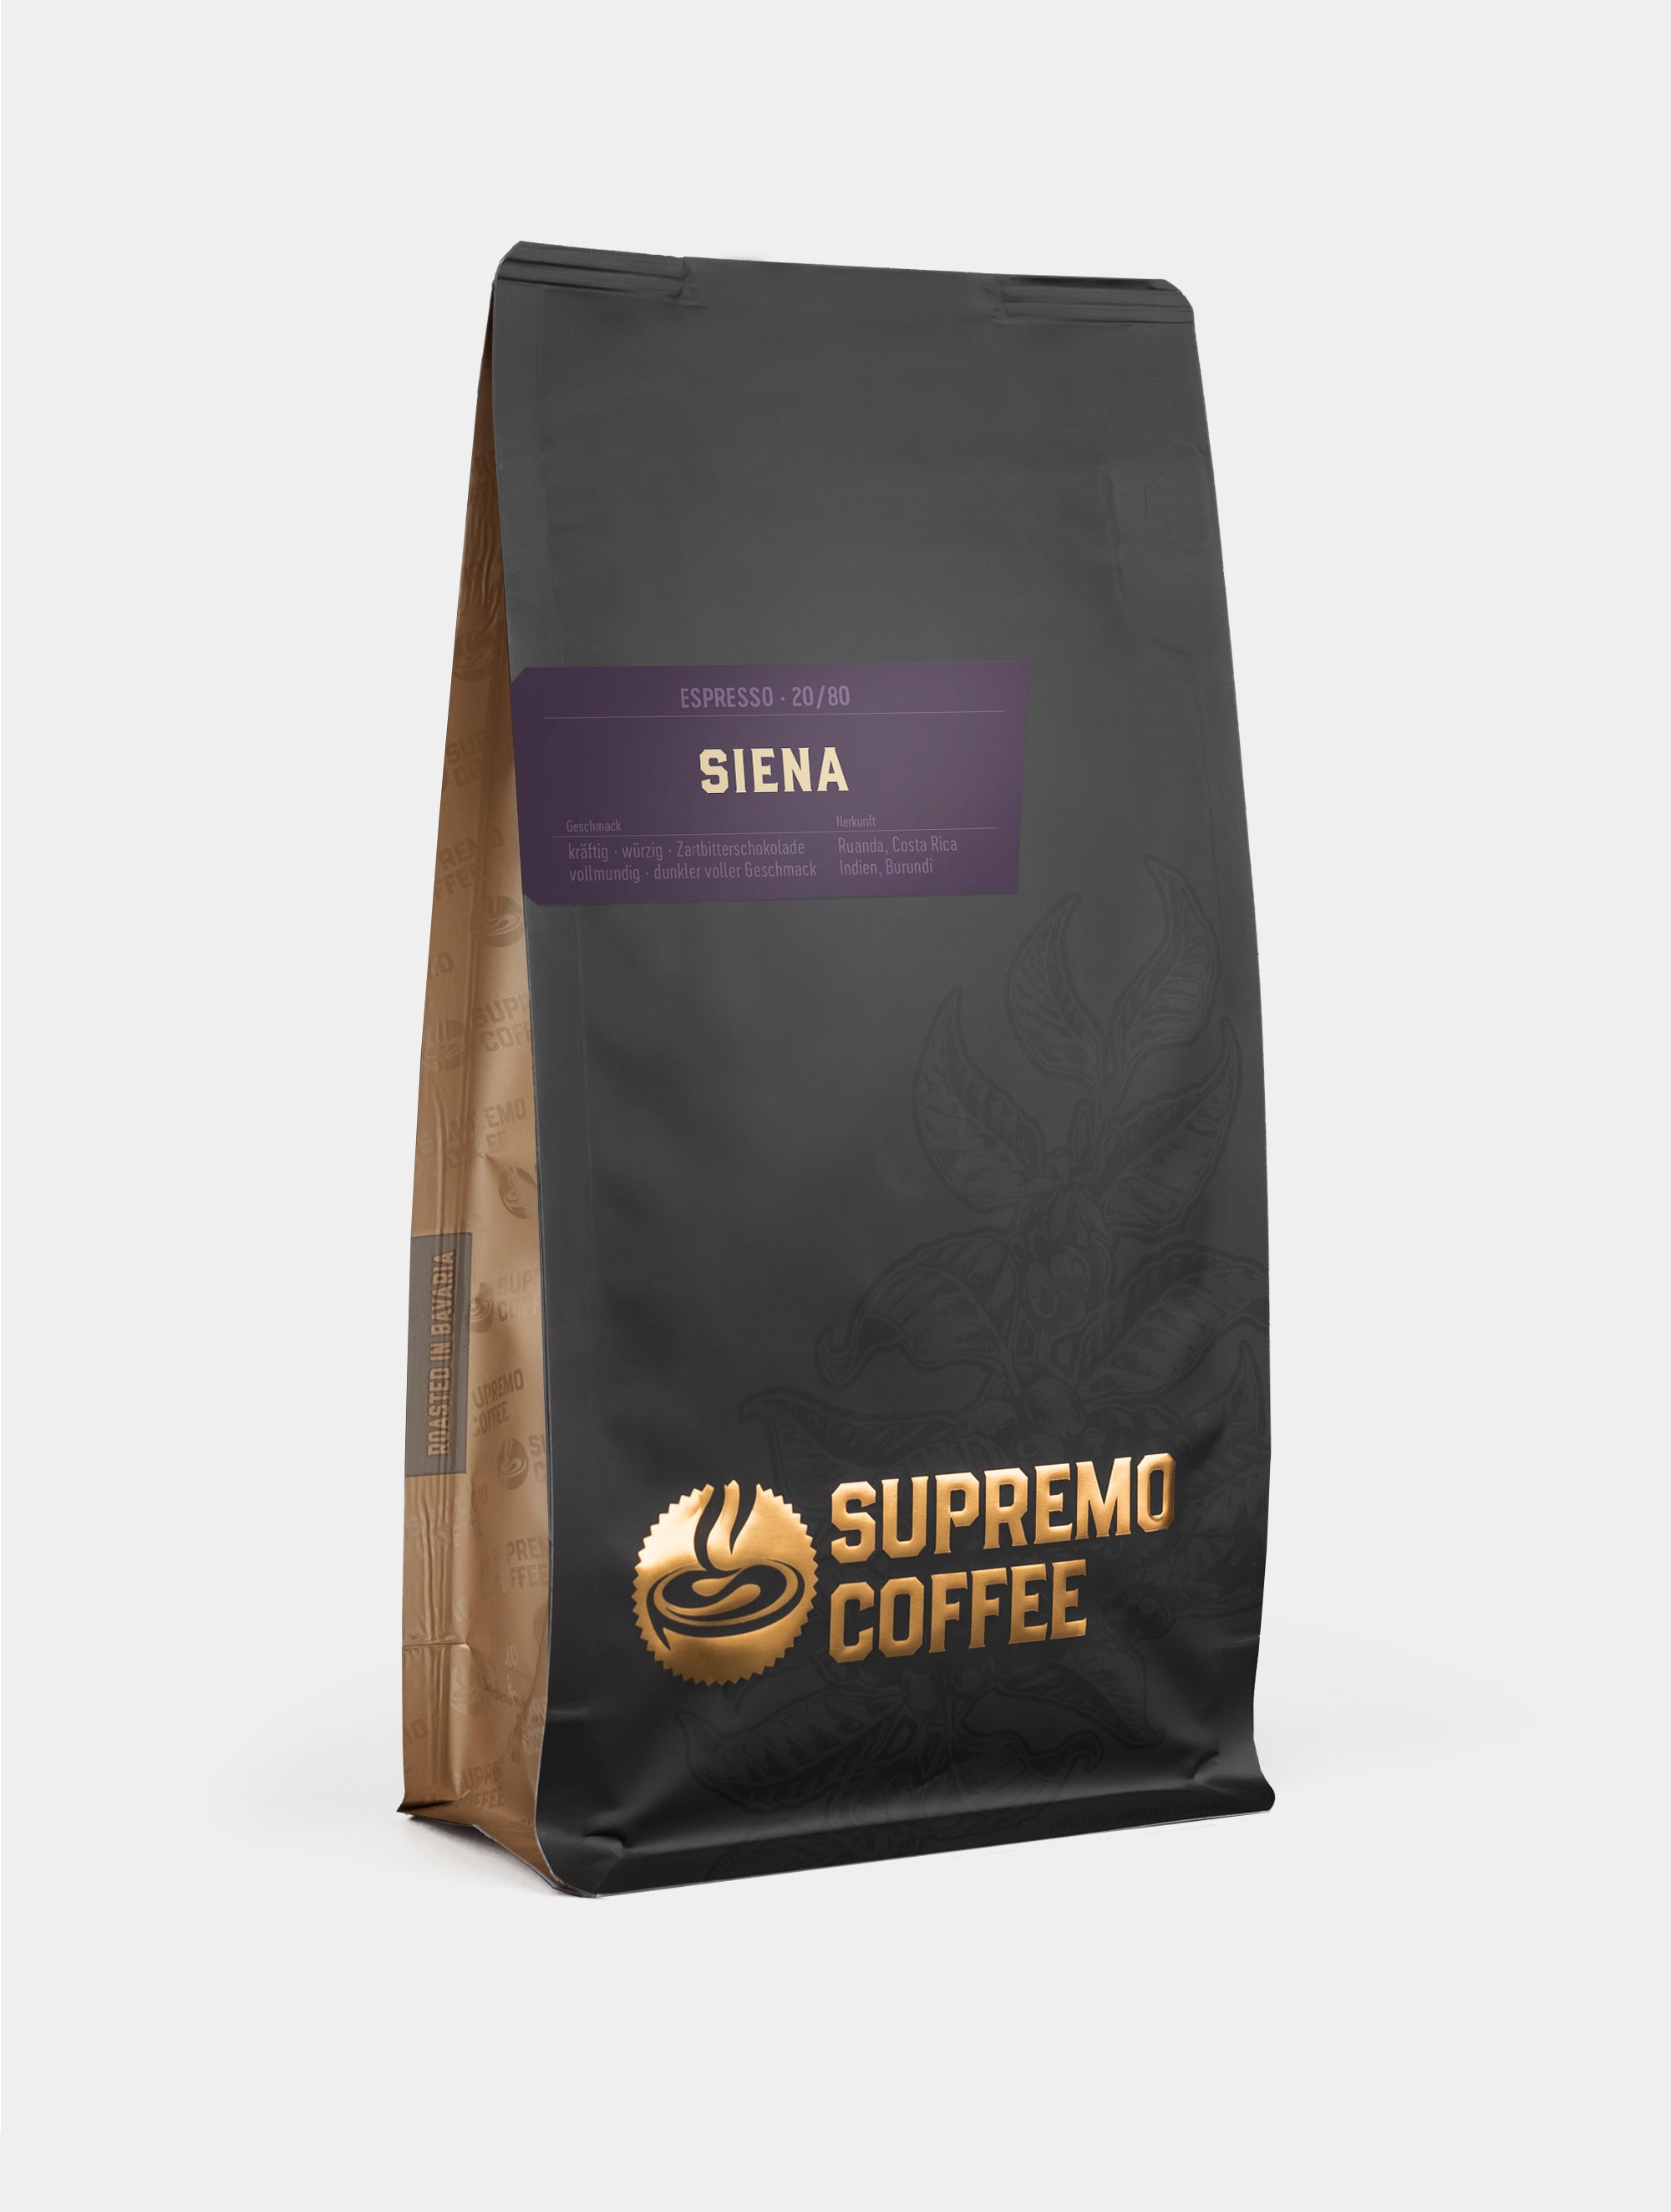 Siena, Espresso 20/80 | SUPREMO Coffee